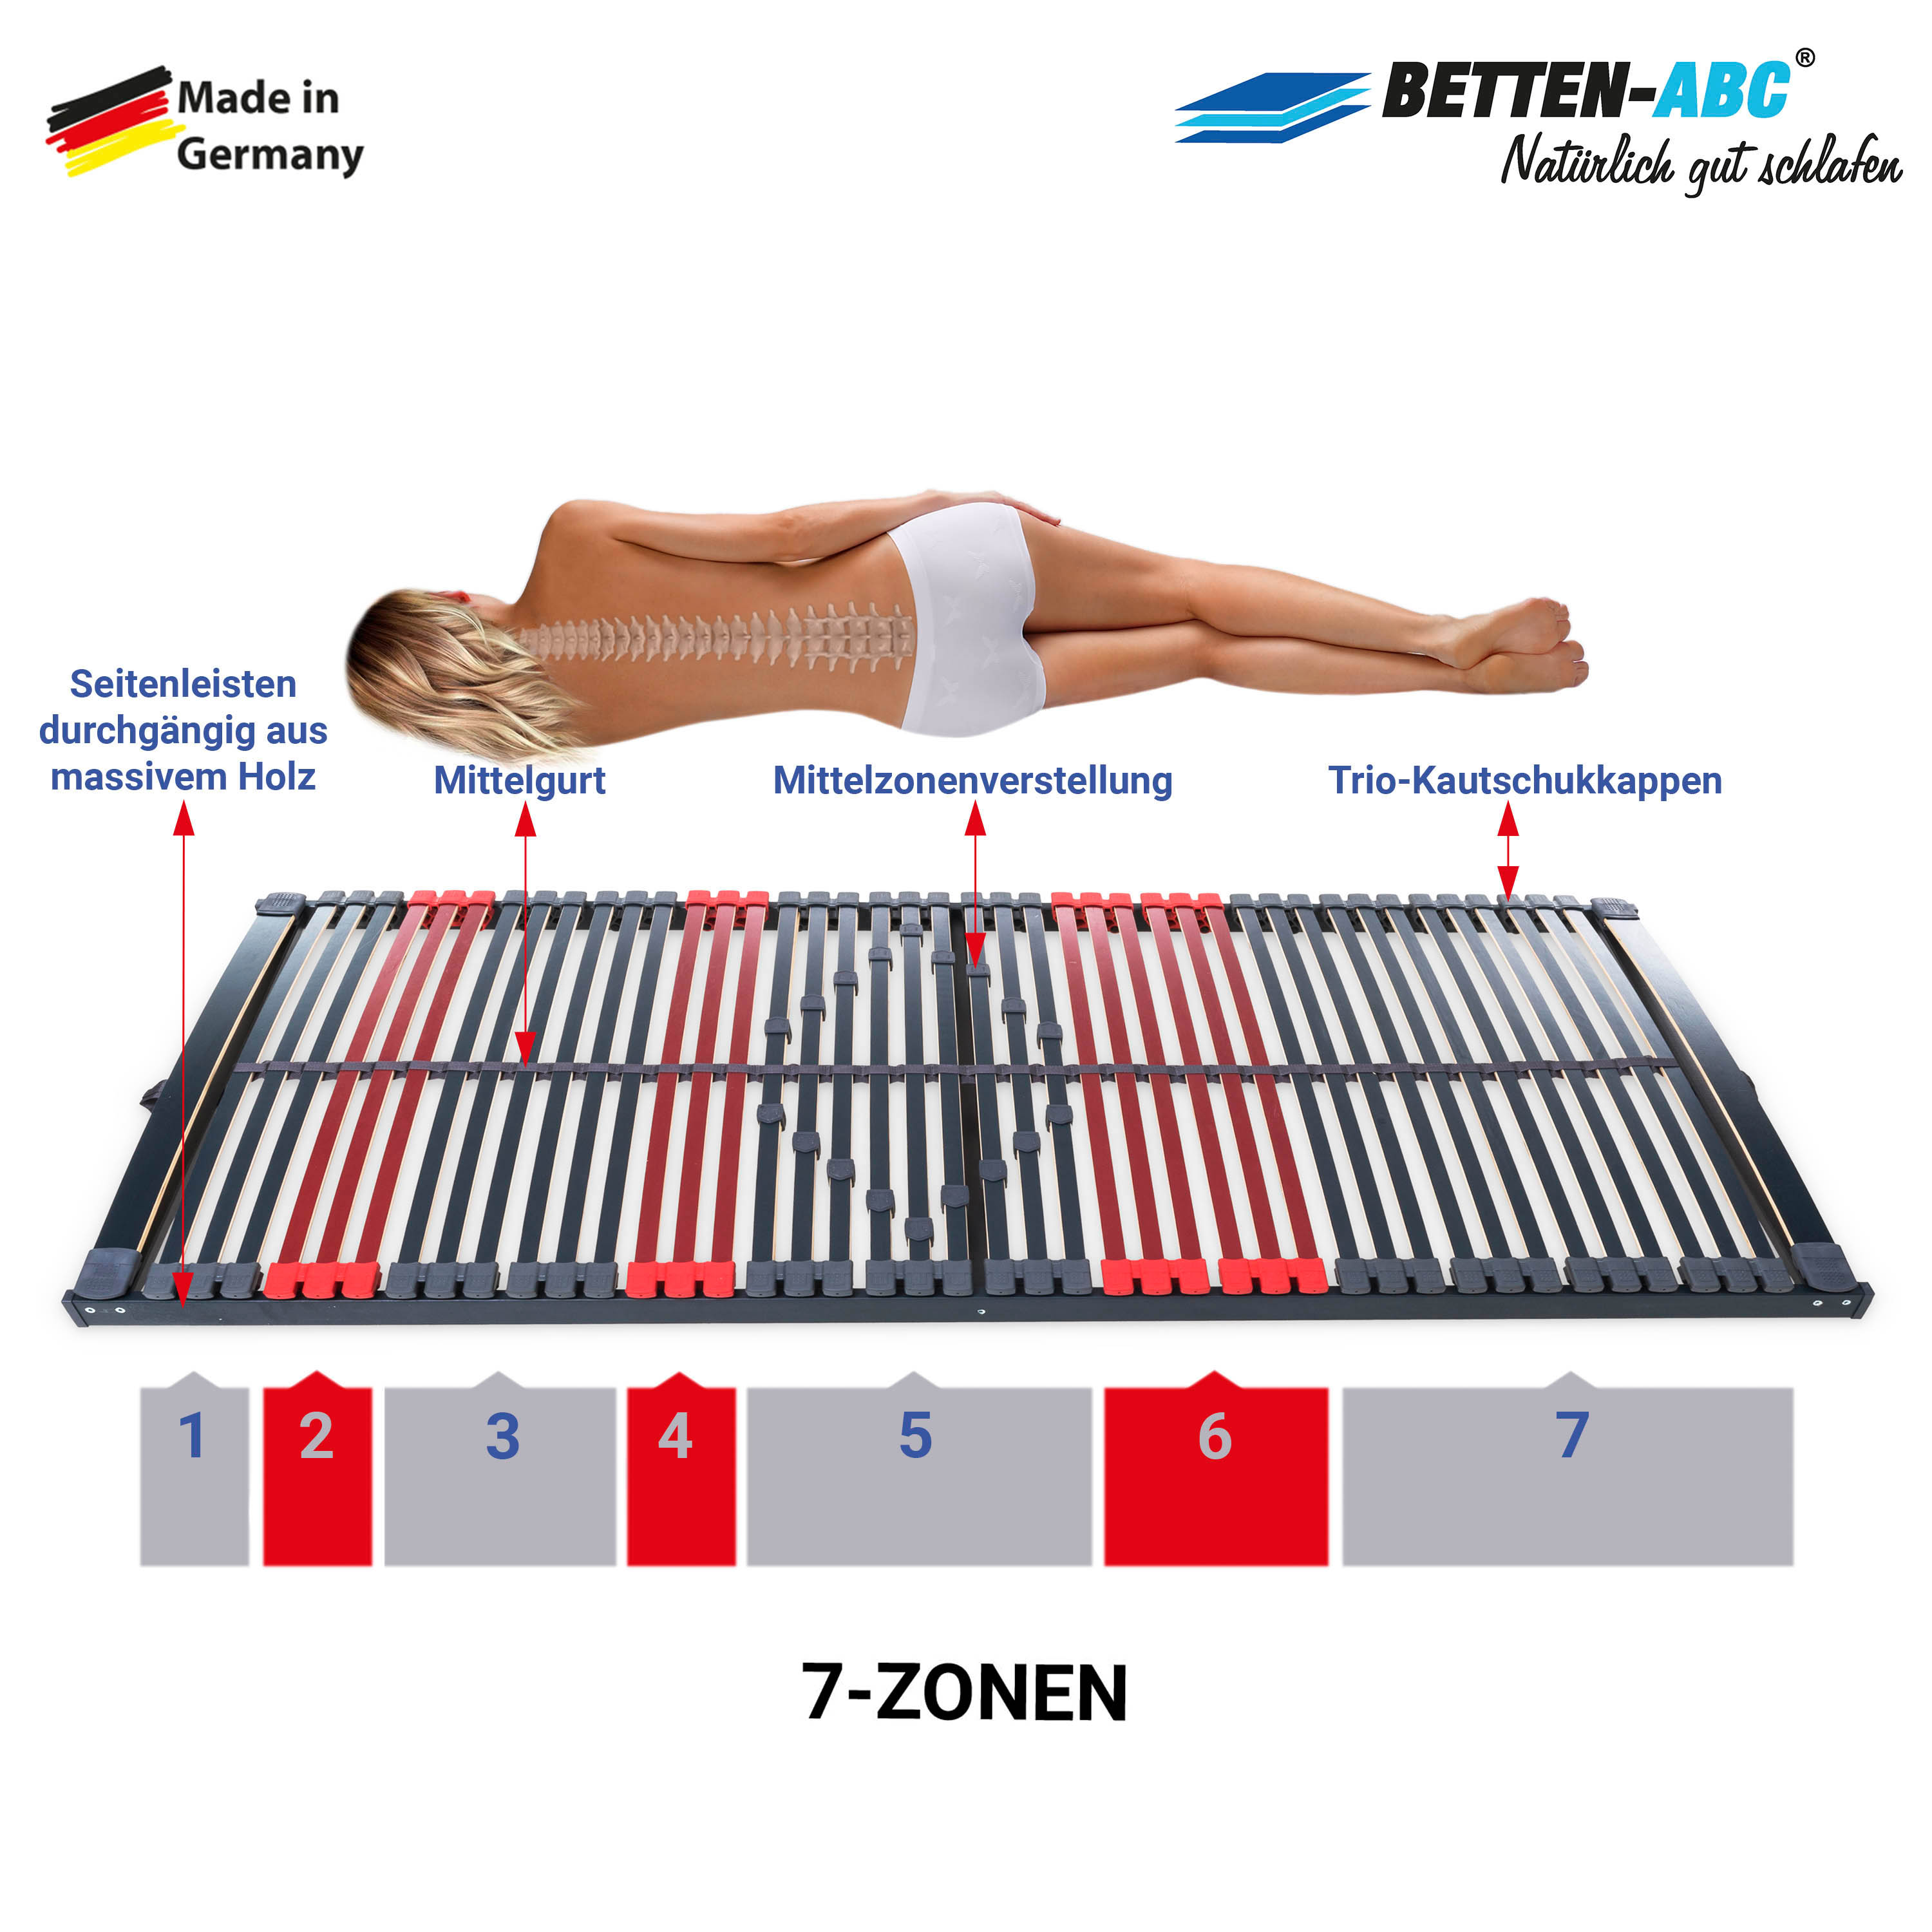 Betten-ABC Max Premium K+F – 7-Zonen-Lattenrost mit 44 Leisten und Kopf- und Fußverstellung